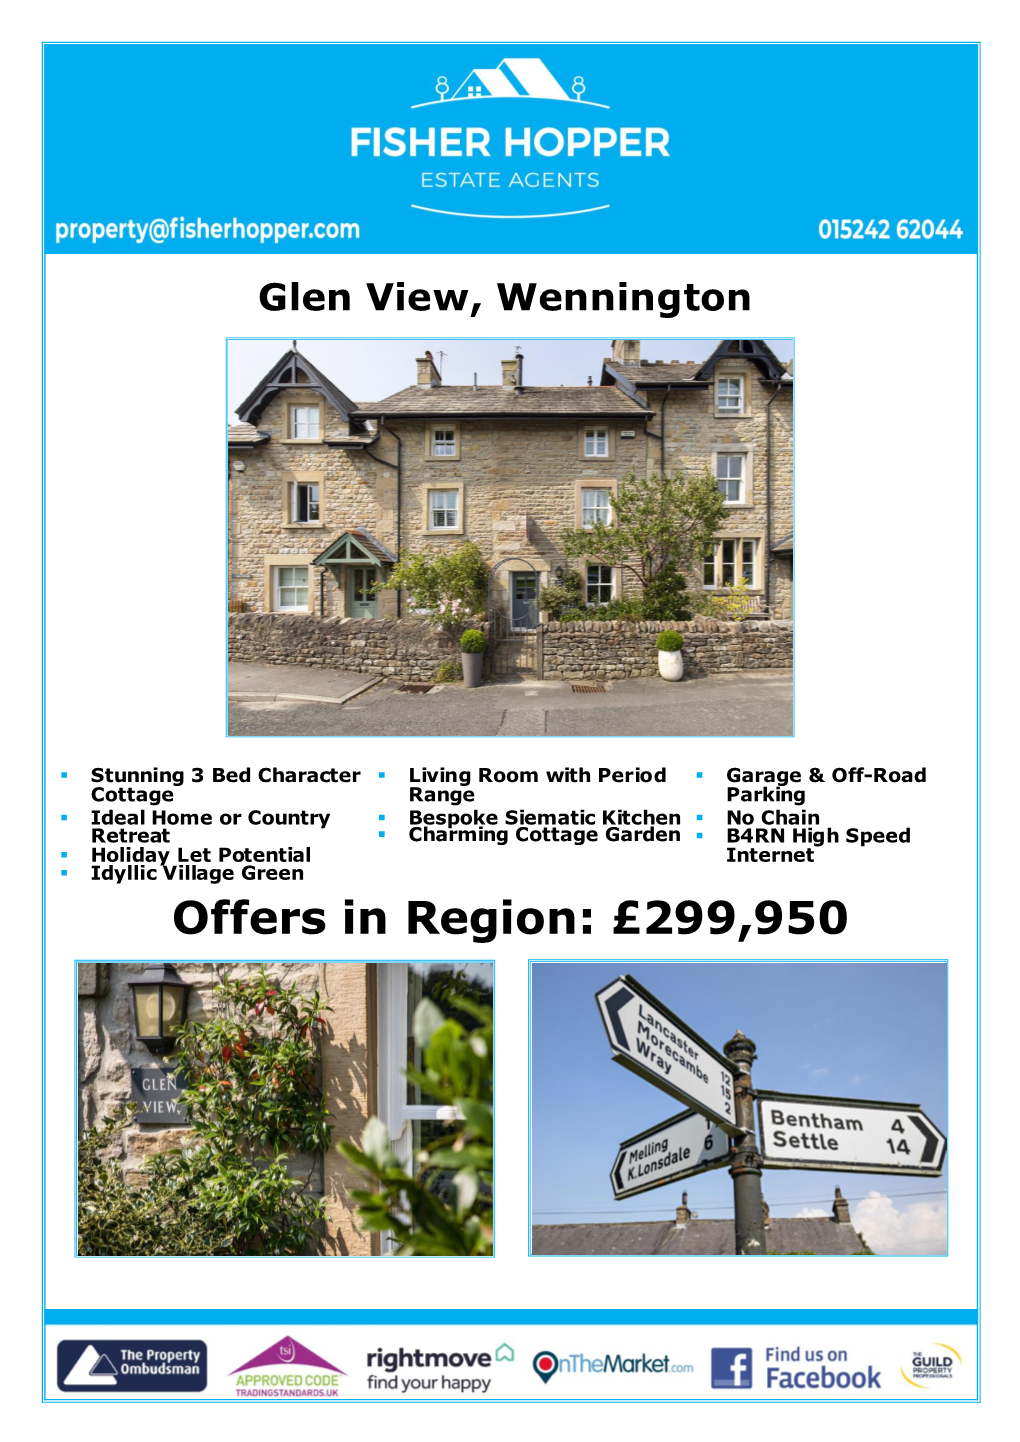 Offers in Region: £299,950